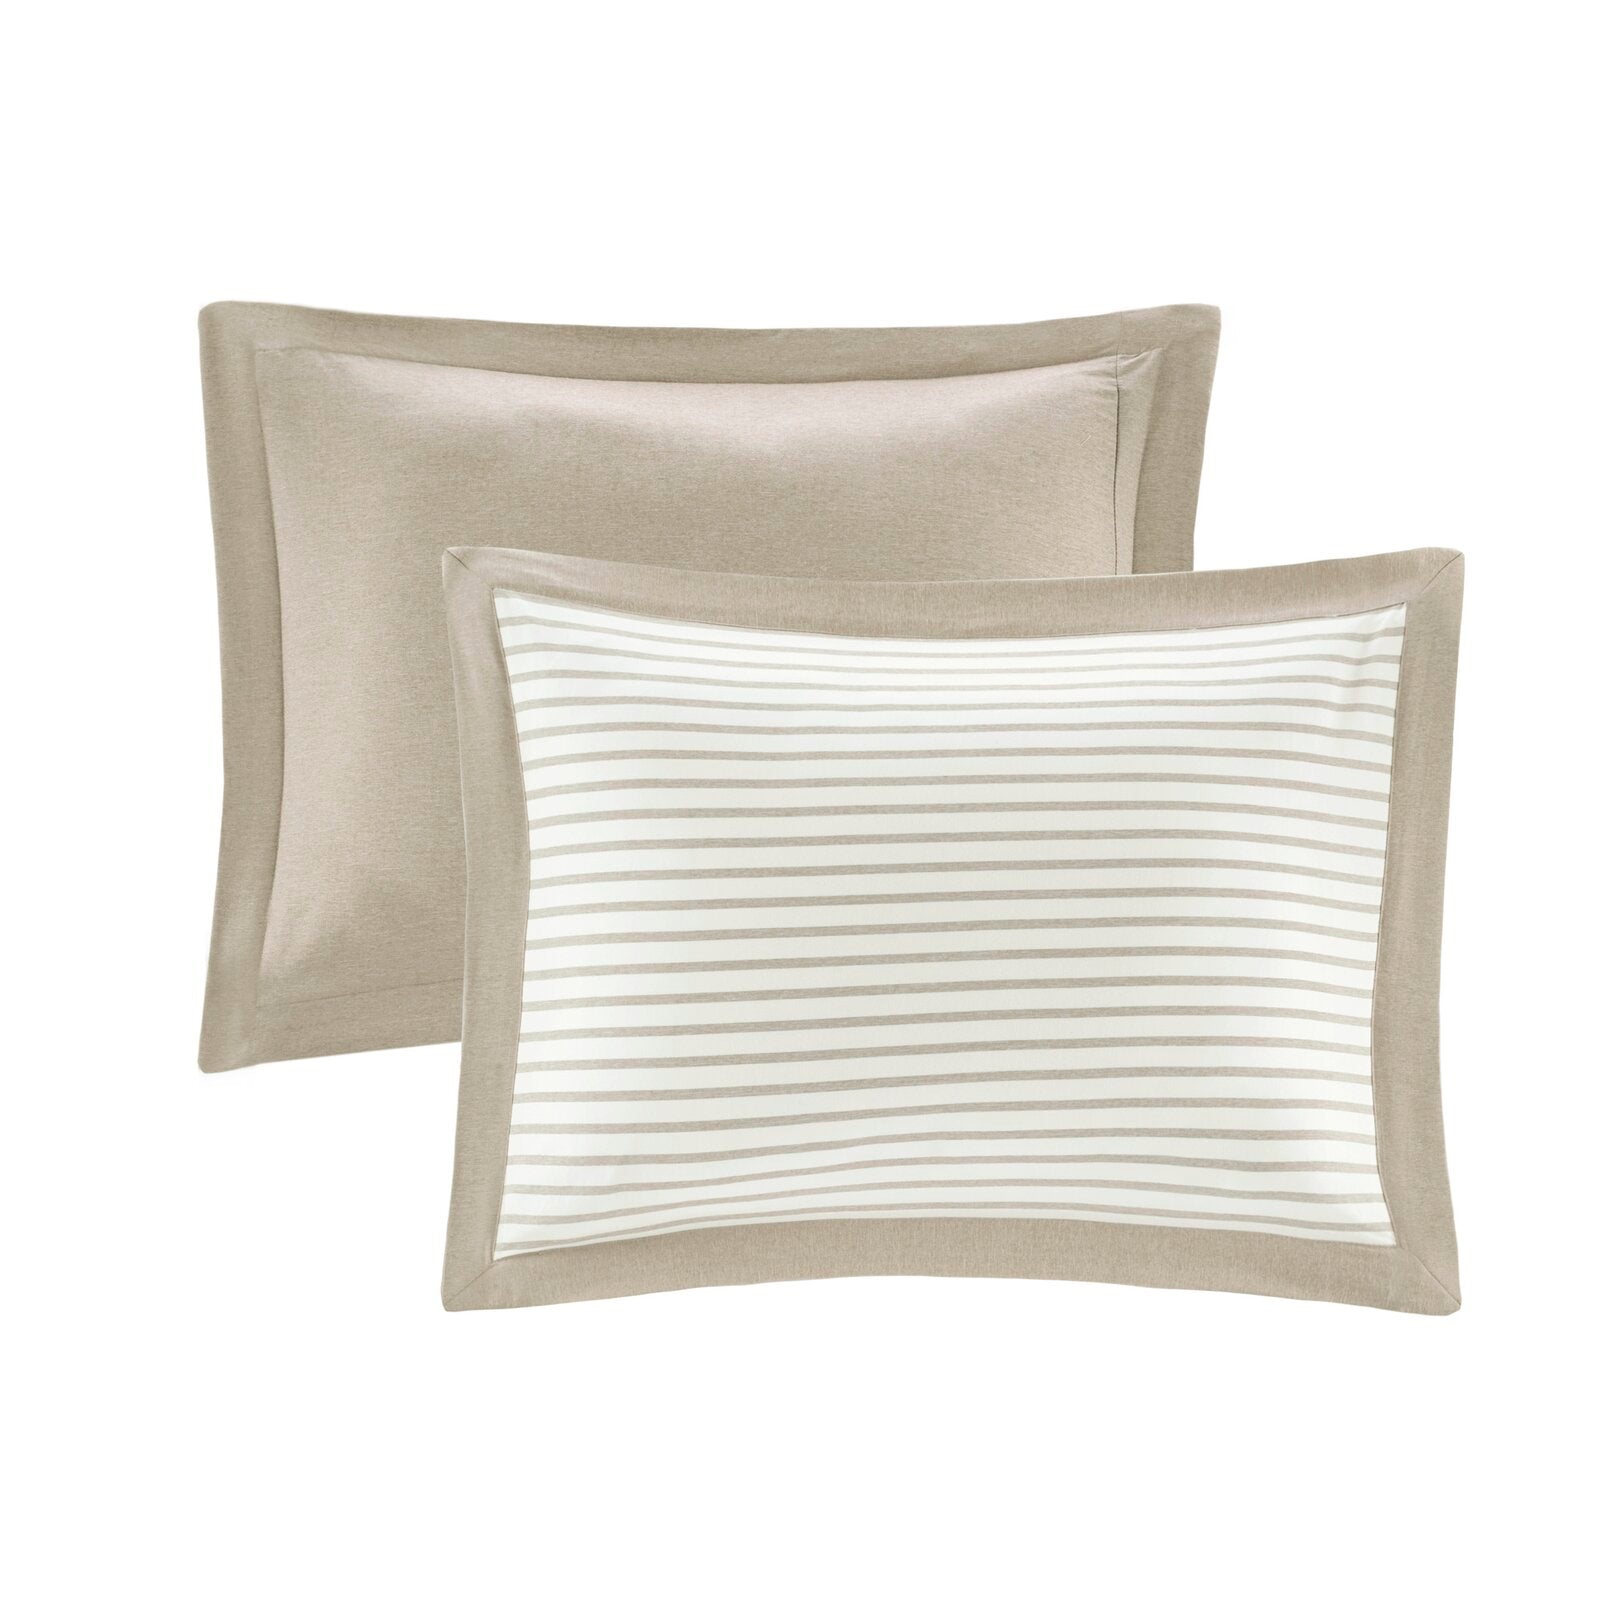 Full/Queen Comforter + 2 Shams Tan Holton Reversible Comforter Set SC586